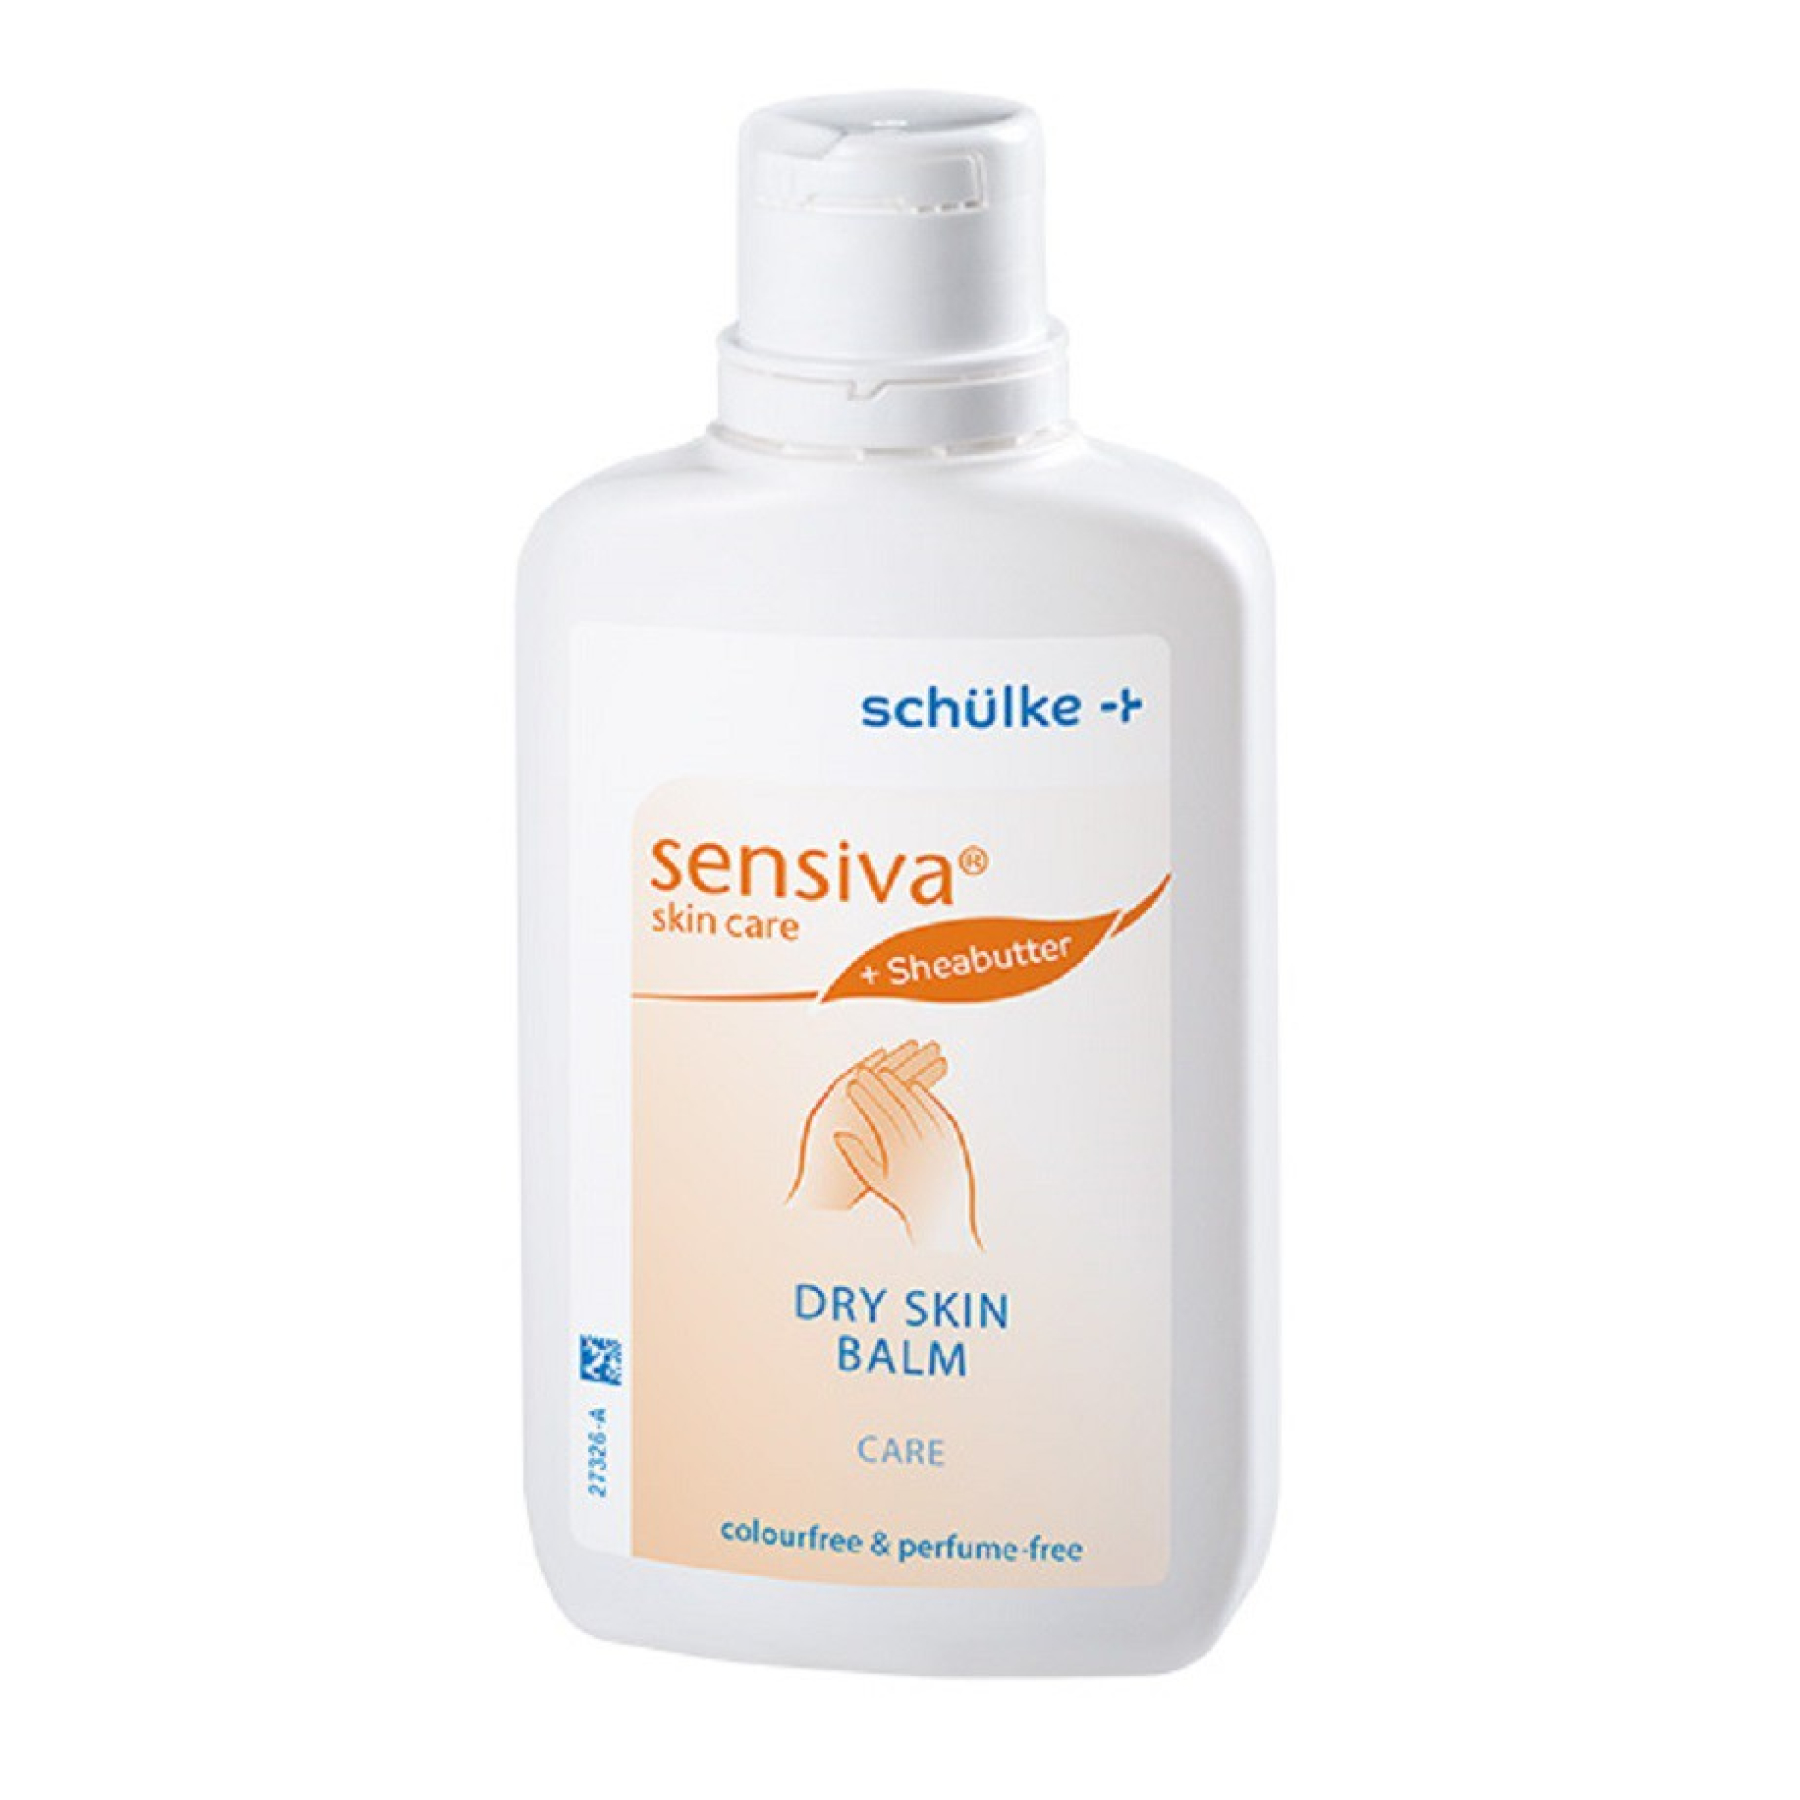 schülke Sensiva dry skin balm care Emulsion